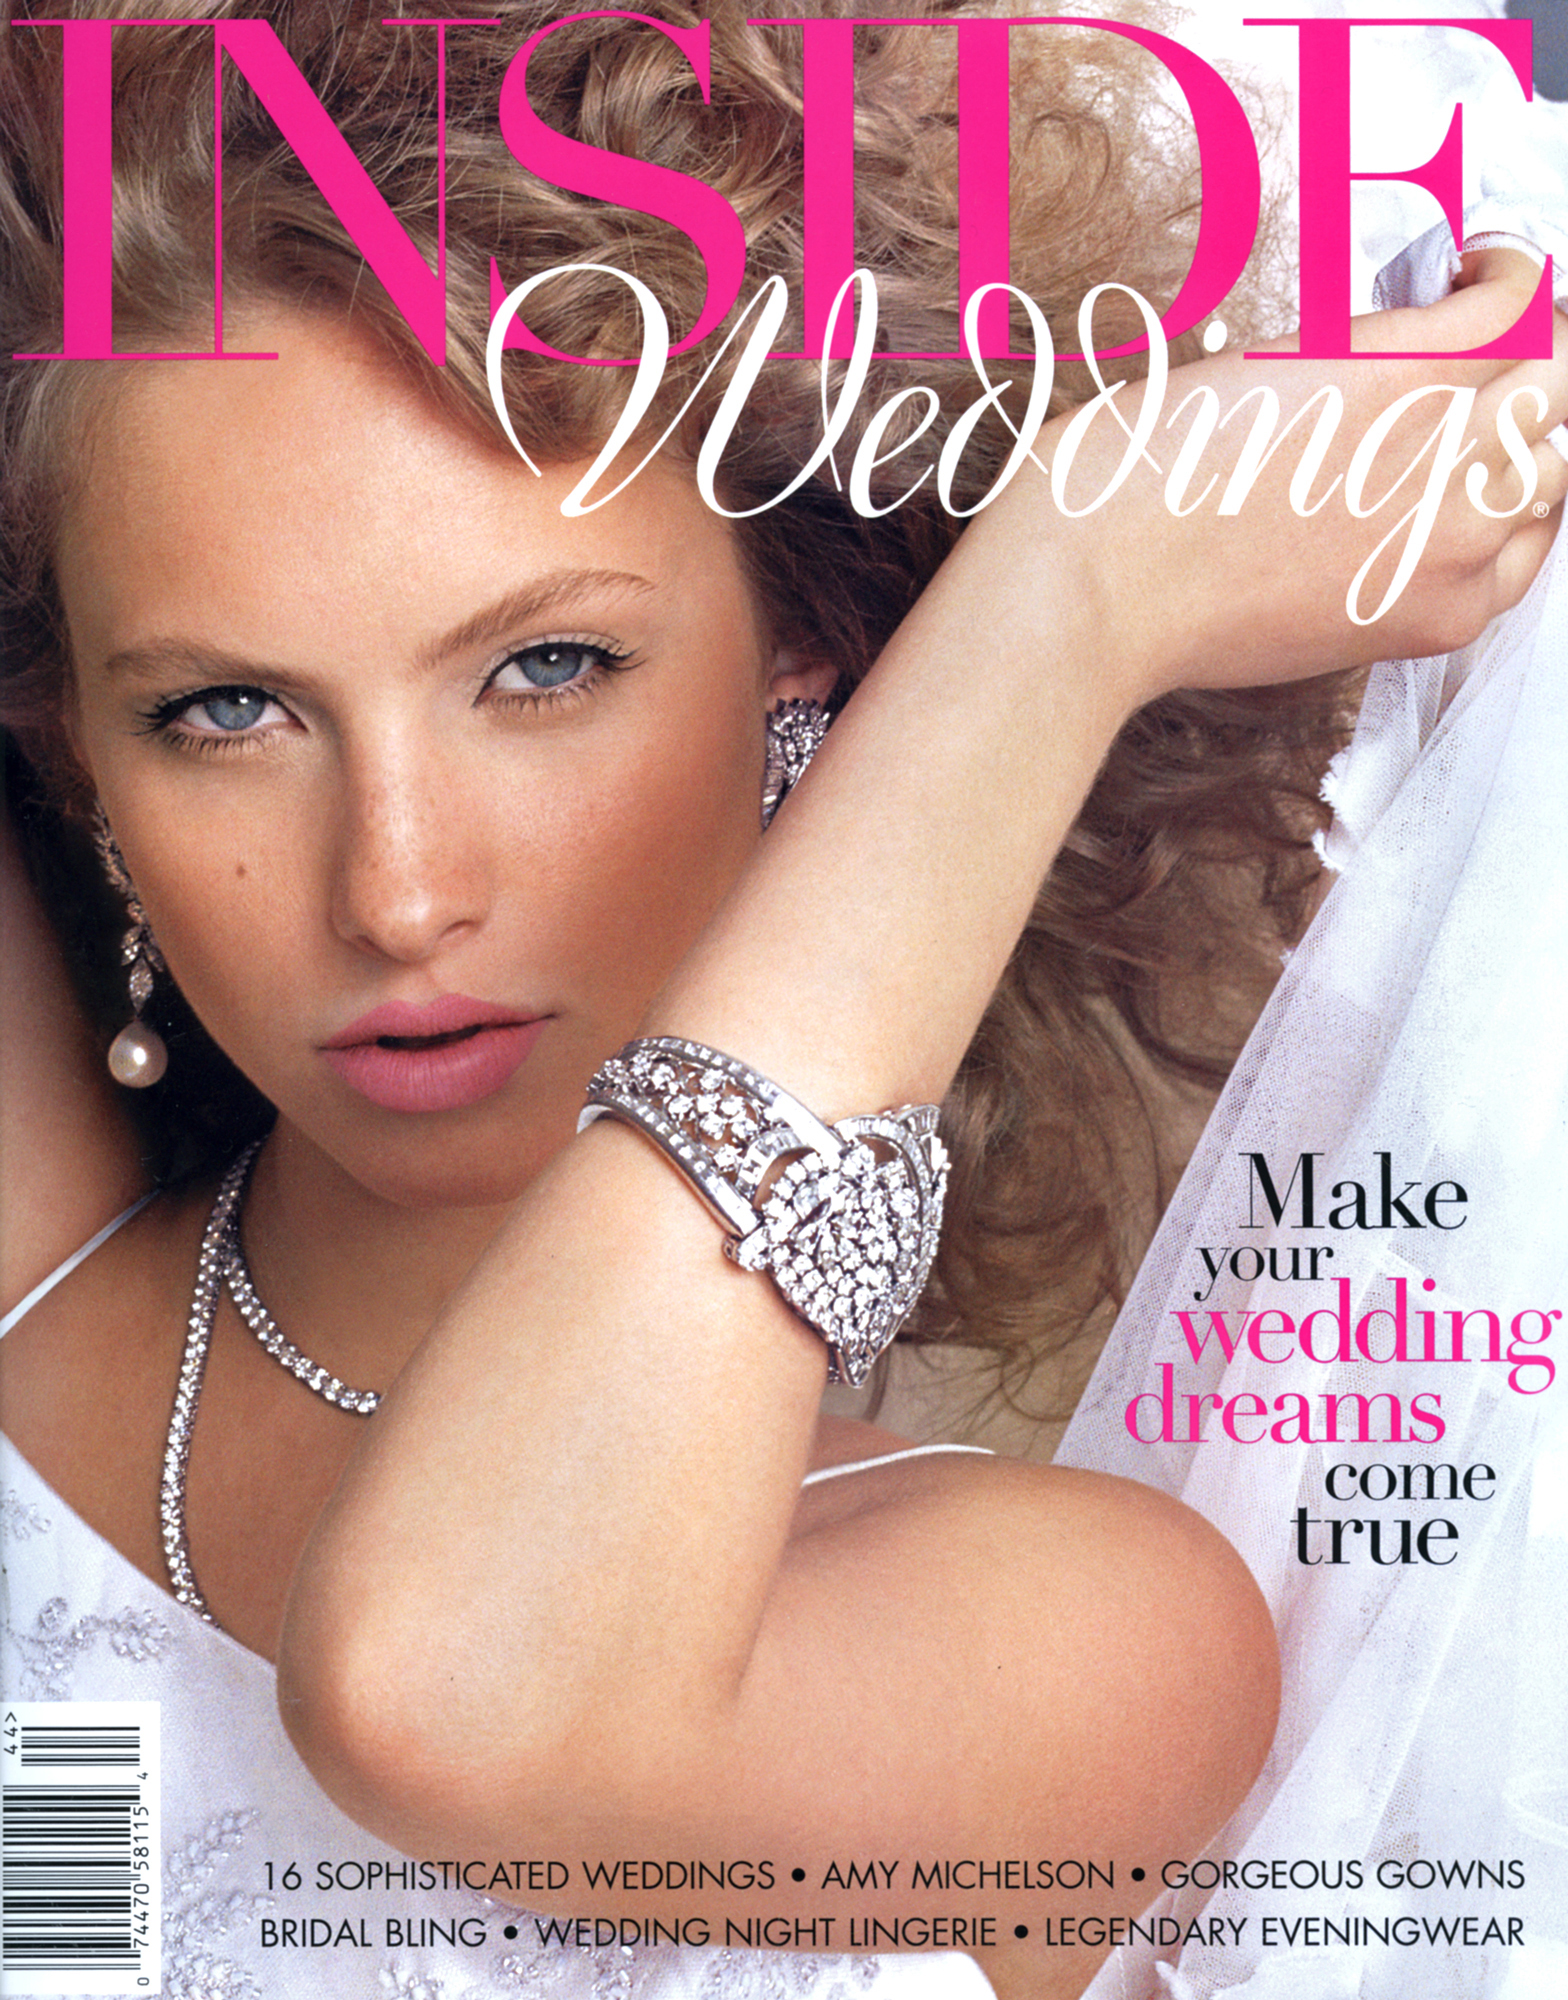 WEDDINGS,MagazineCover,retouching,Brides,Models,celebrations.jpg